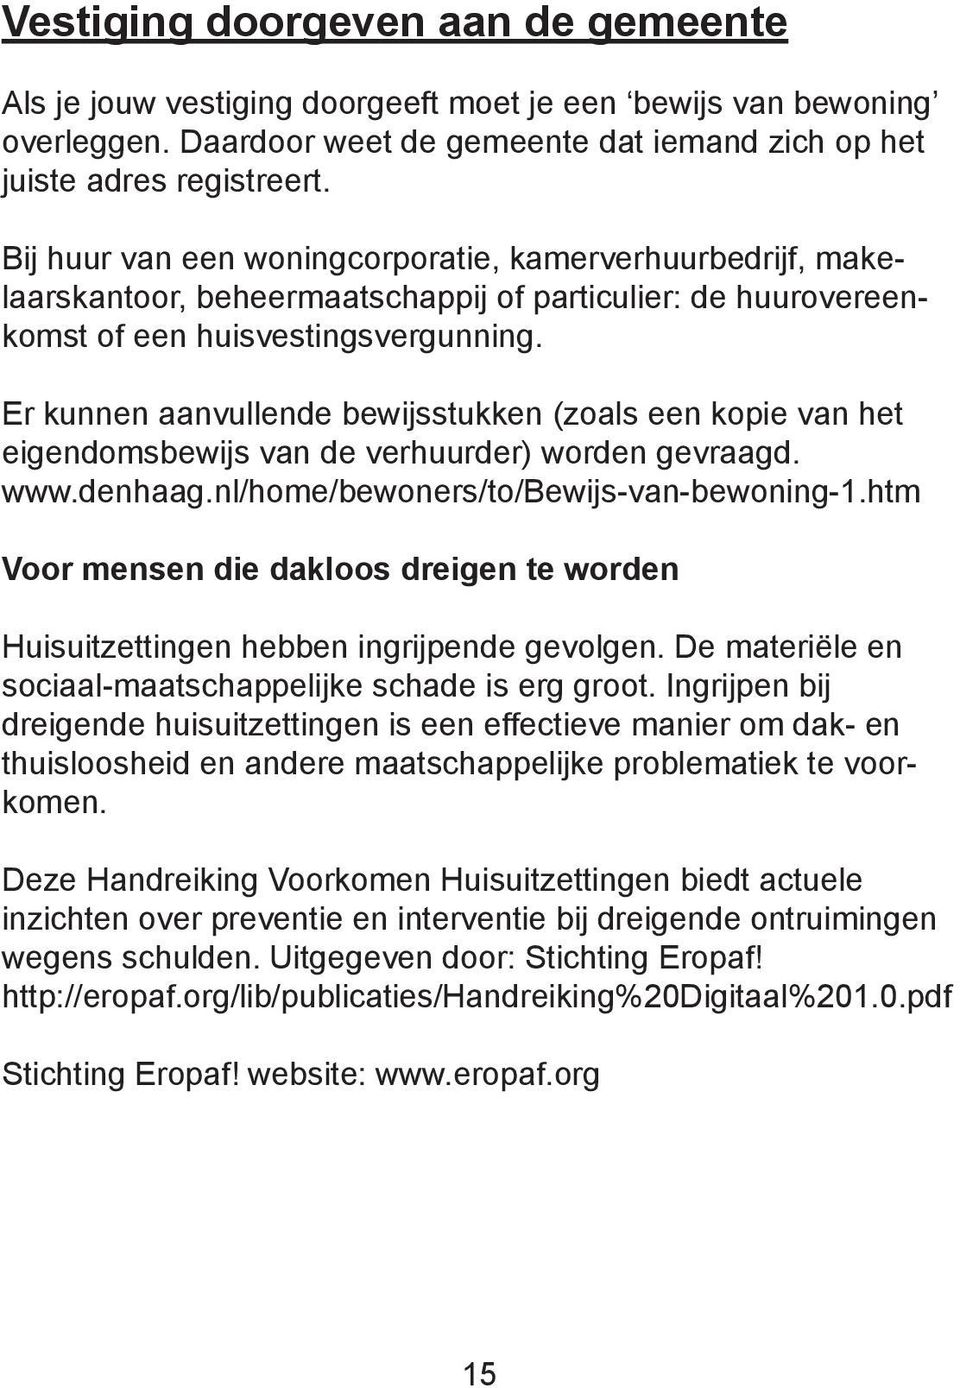 Er kunnen aanvullende bewijsstukken (zoals een kopie van het eigendomsbewijs van de verhuurder) worden gevraagd. www.denhaag.nl/home/bewoners/to/bewijs-van-bewoning-1.